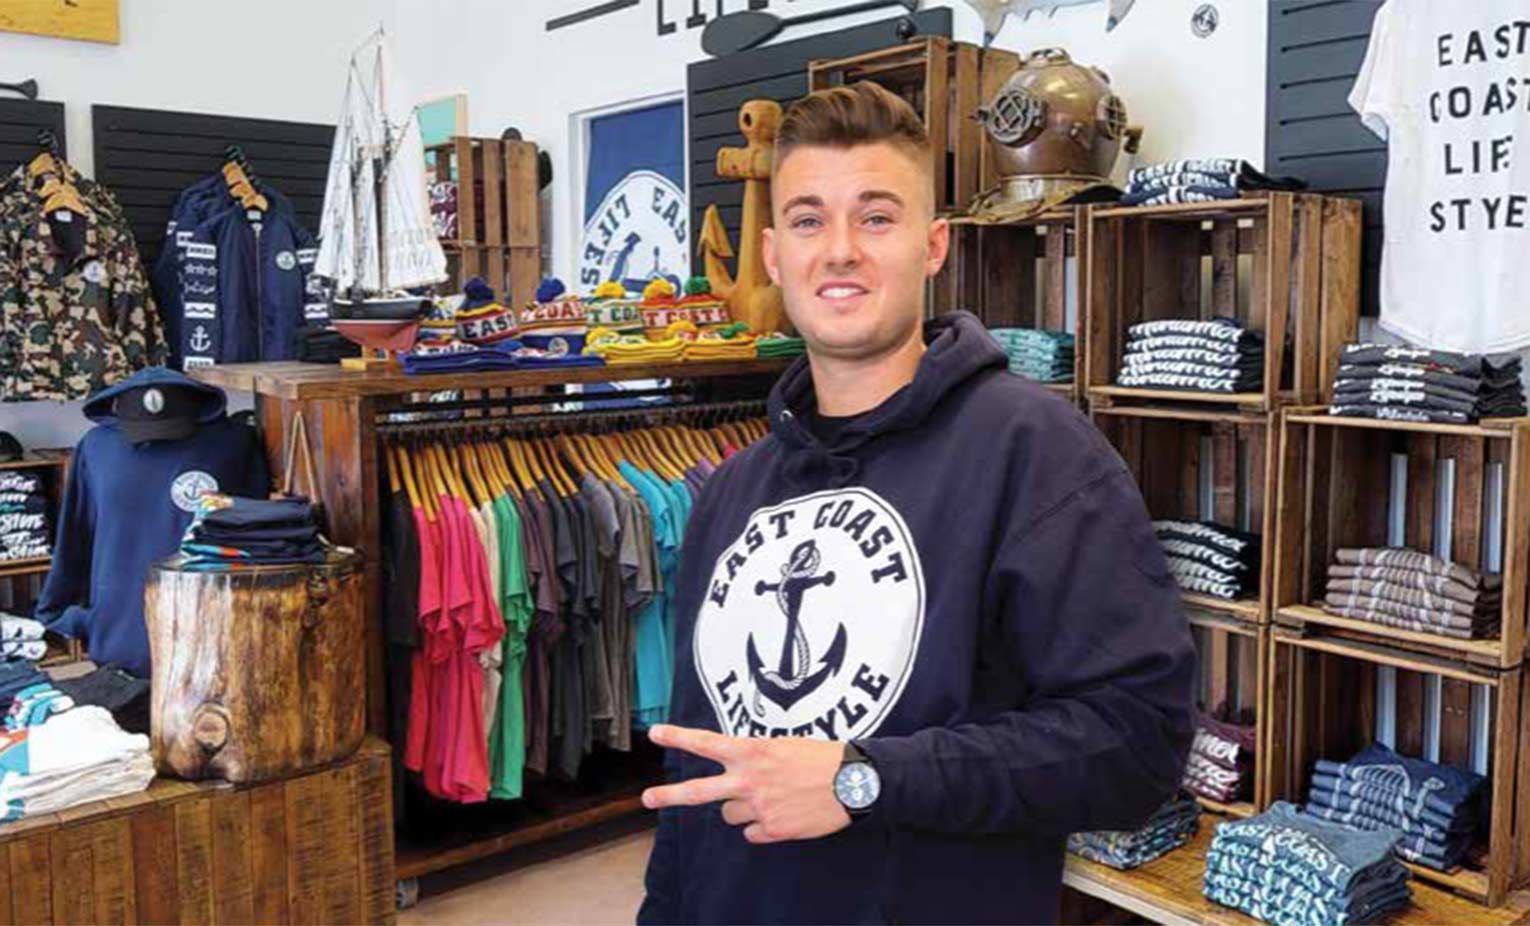 Alex MacLean, fondateur d’East Coast Lifestyle, porte un chandail à capuchon de la marque.